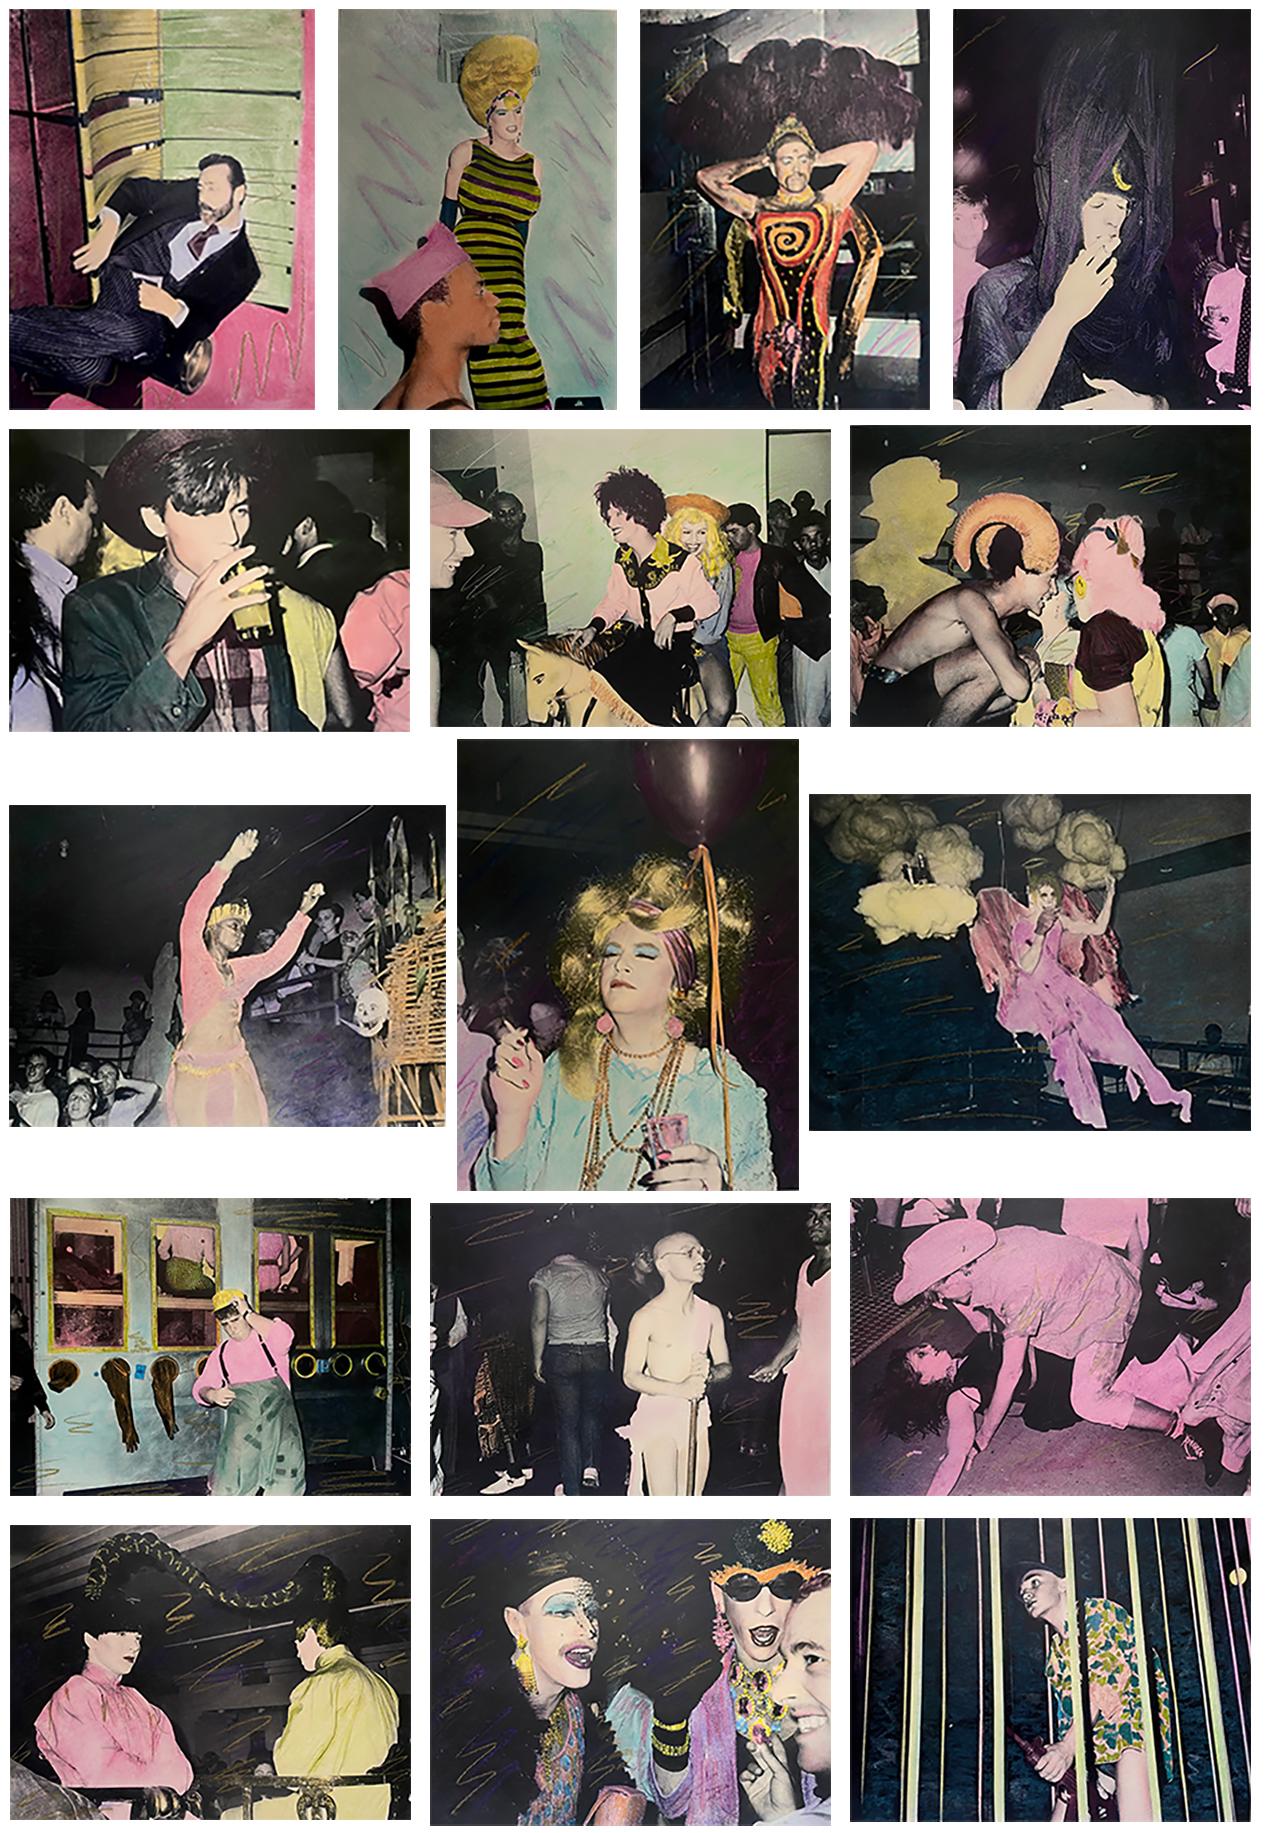 Fernando Natalici Area Nightclub 1983-1987:
Eine Sammlung von 16 handkolorierten Silbergelatine-Fotografien, die die Geschichte des bahnbrechenden New Yorker Nachtclubs "Area" aus den 1980er Jahren dokumentiert. Diese seltenen Bilder wurden von